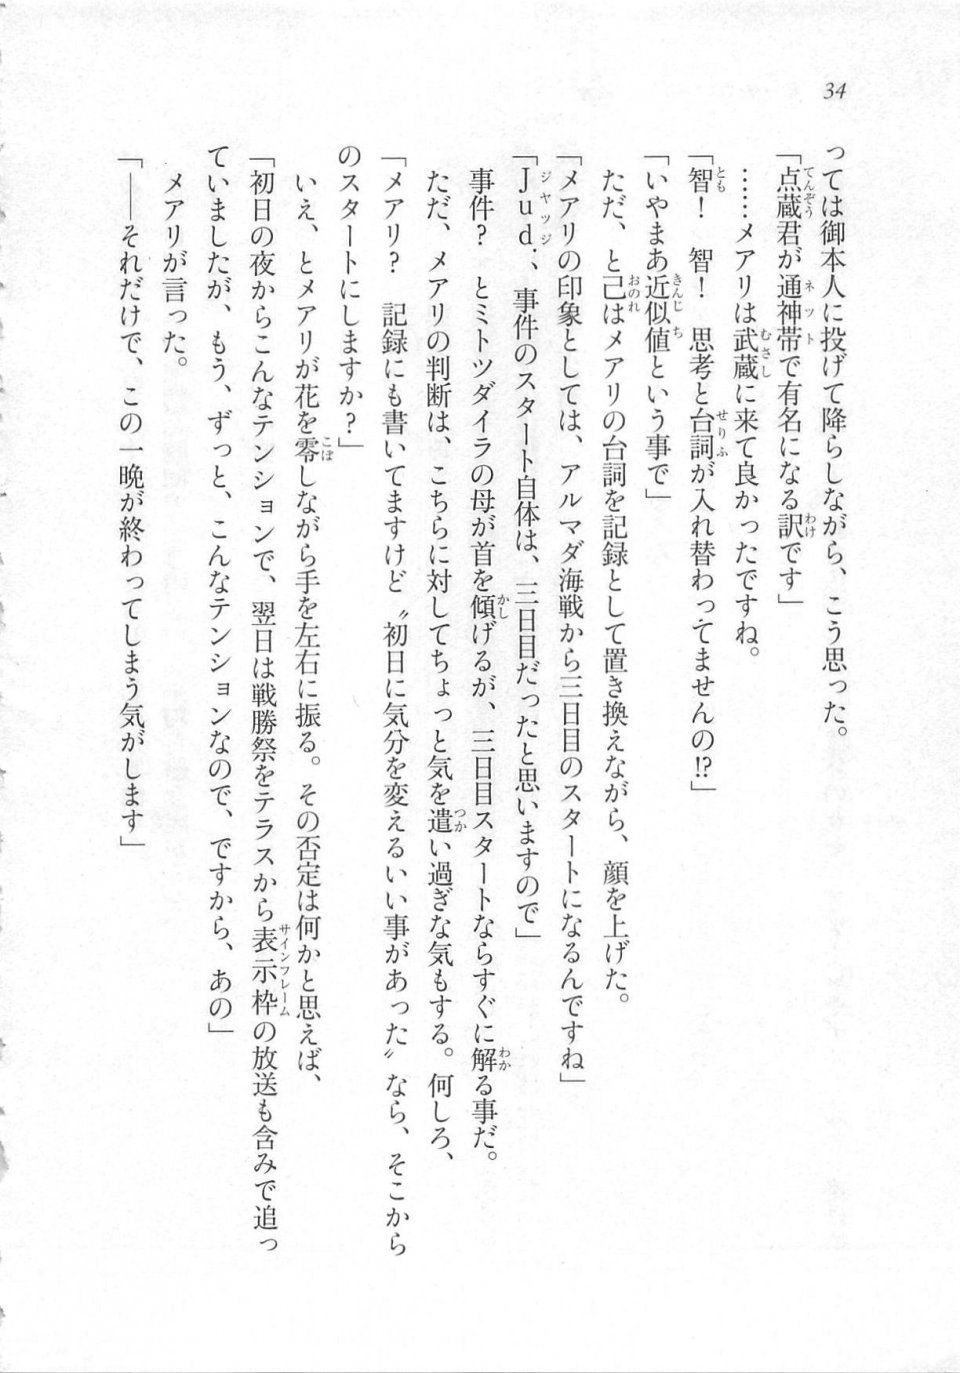 Kyoukai Senjou no Horizon LN Sidestory Vol 3 - Photo #38